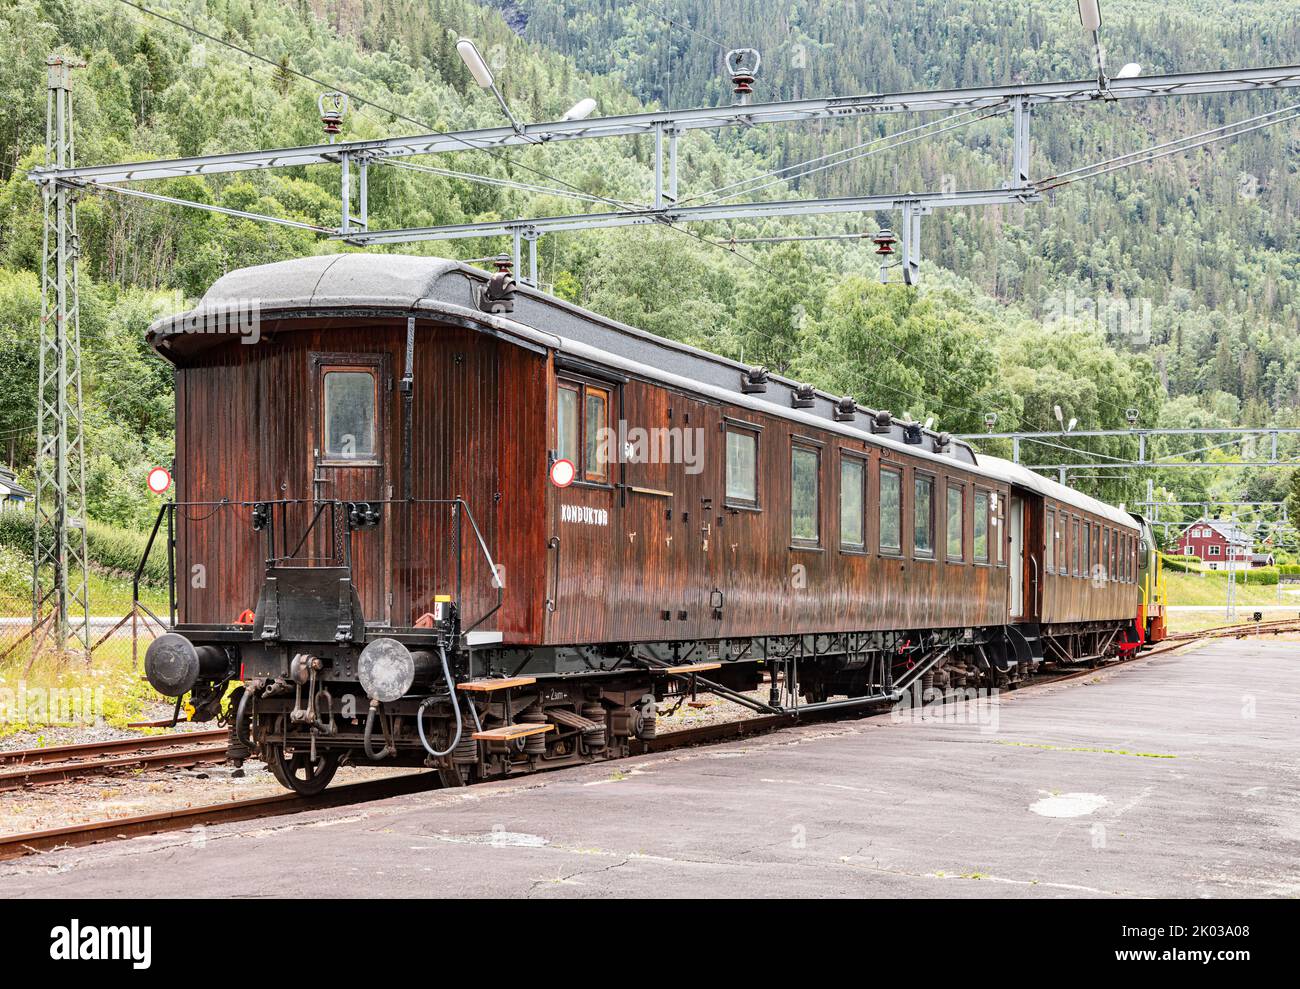 Norway, Vestfold og Telemark, Rjukan, Mæl, train station, train standing on platform, teak wood carriages Stock Photo